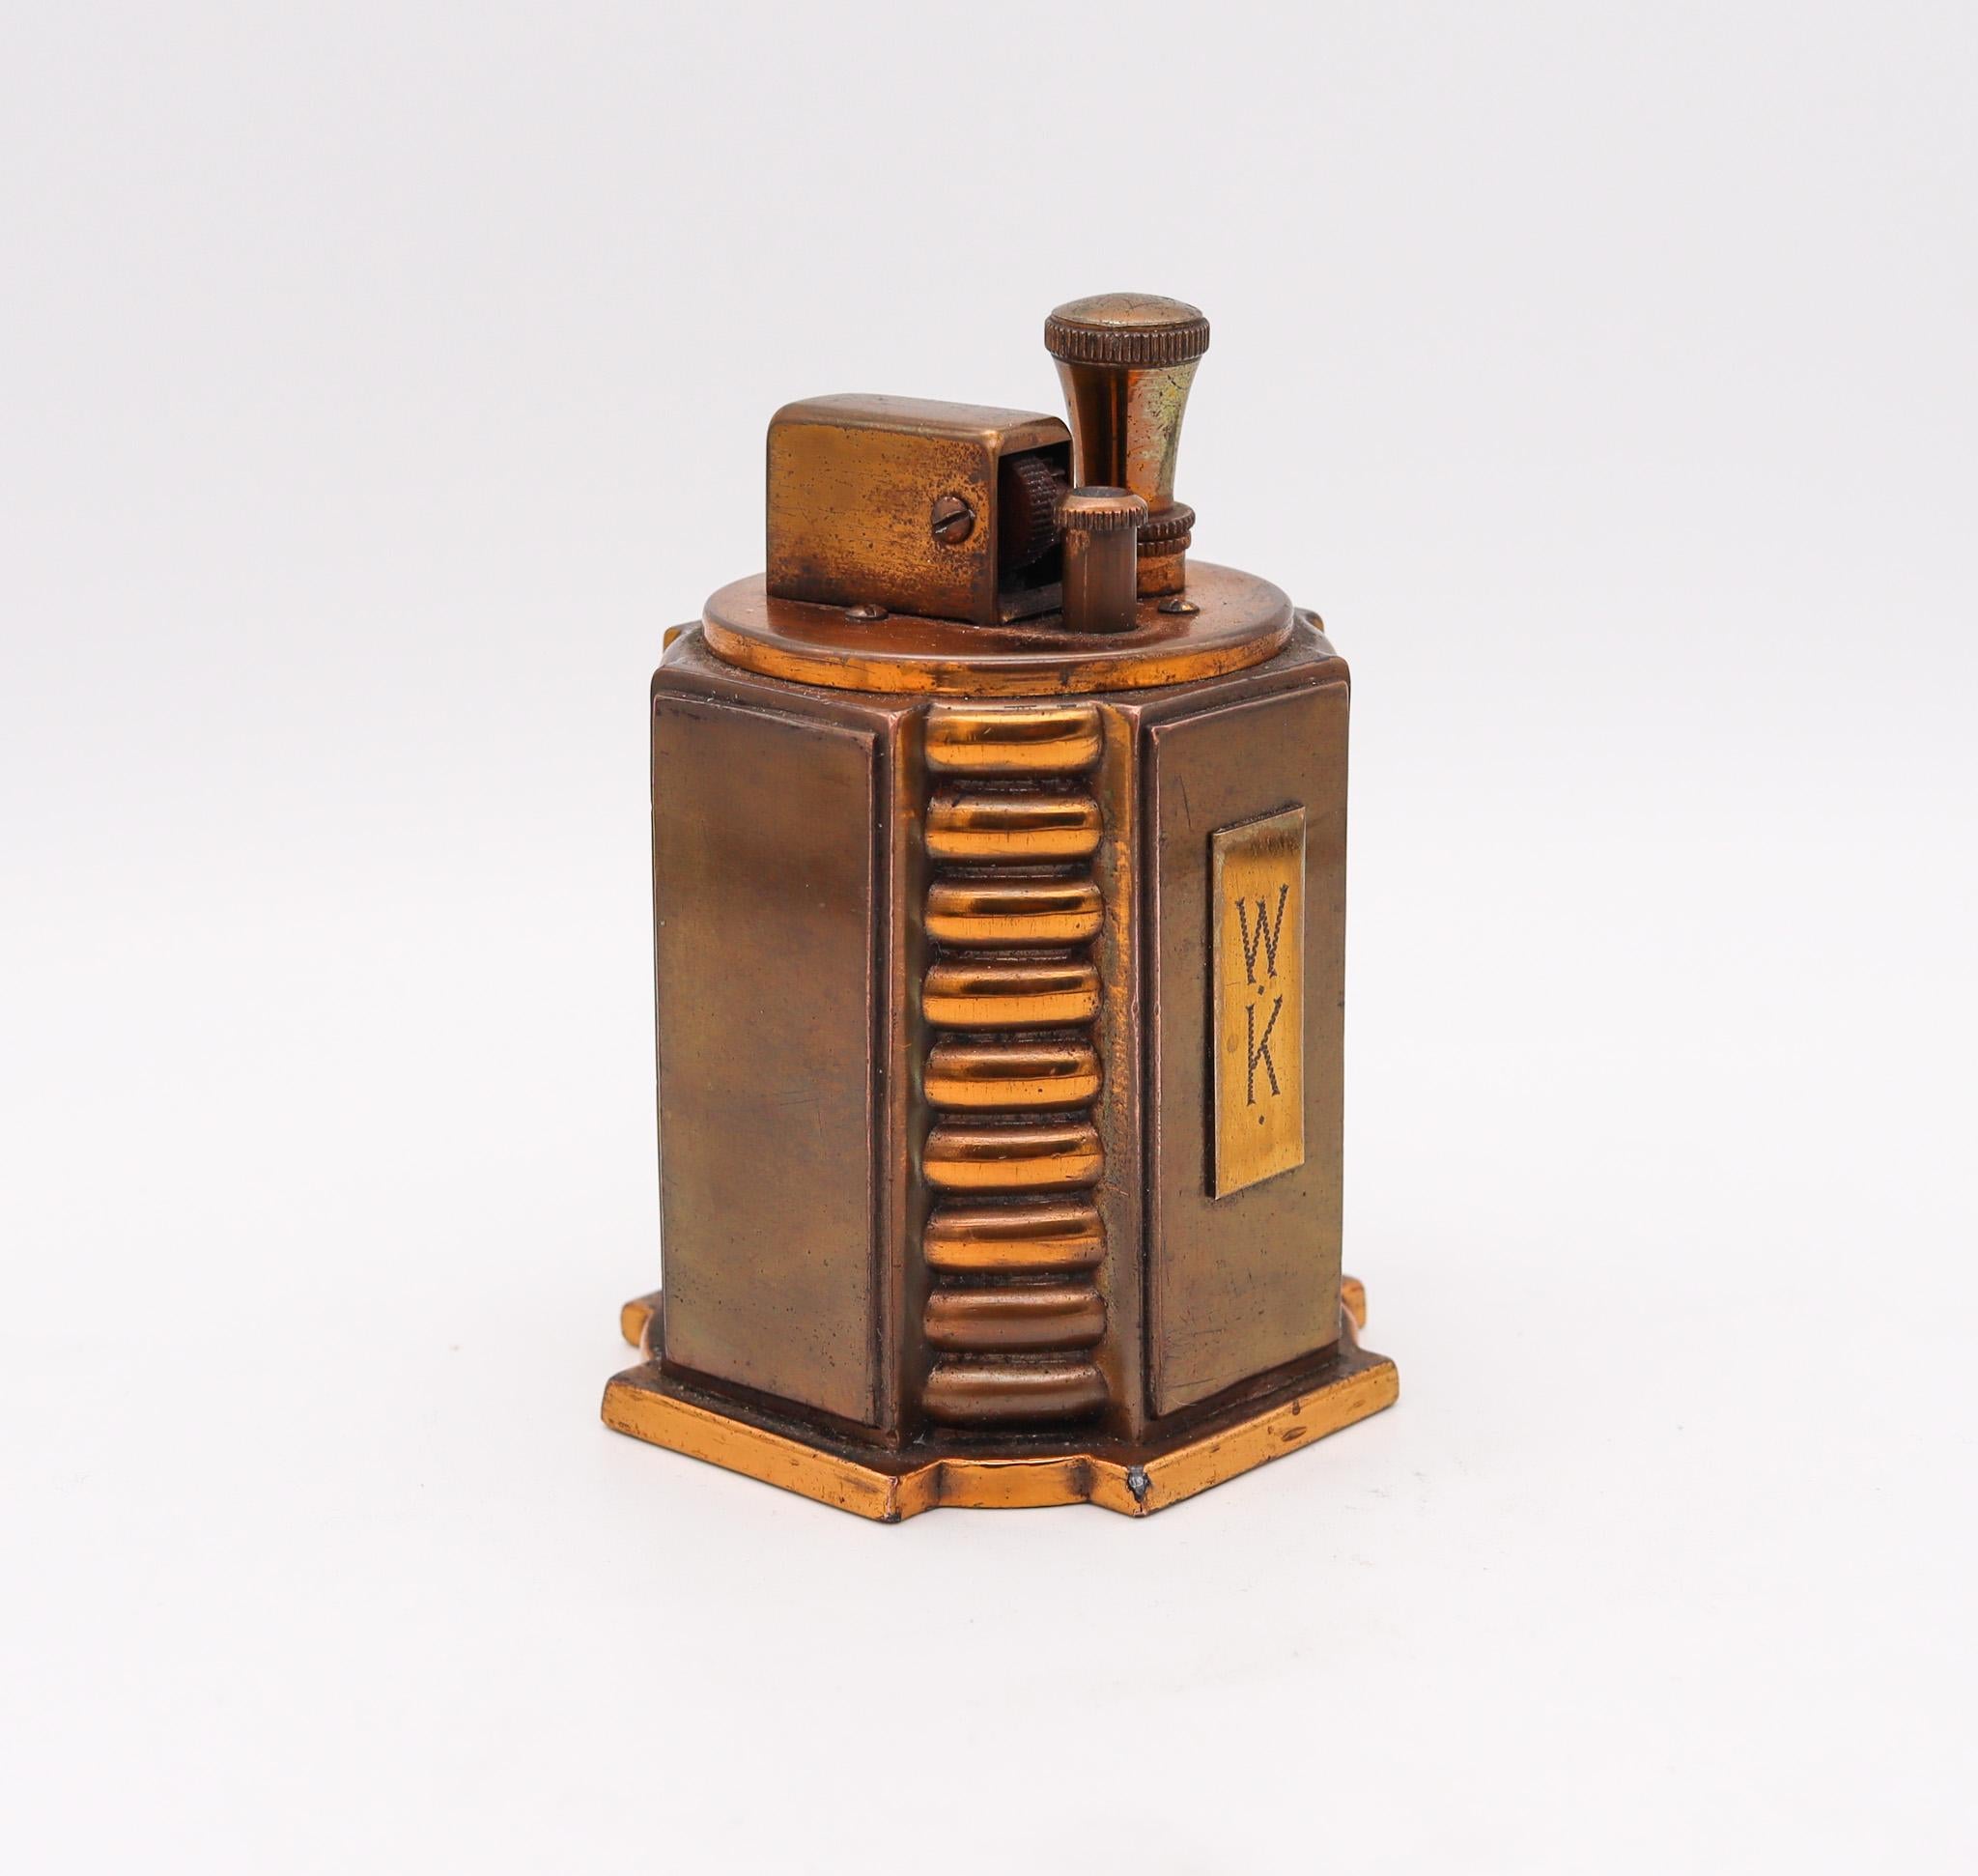 Ein Tourette-Schreibtischfeuerzeug aus Bronze, entworfen von Ronson.

Sehr seltenes Tischfeuerzeug Touch-Tip, hergestellt in Newark New Jersey von Ronson, bei The Art Metal Works Co. während der Art-Deco-Periode, im Jahr 1936. Dies ist ein sehr